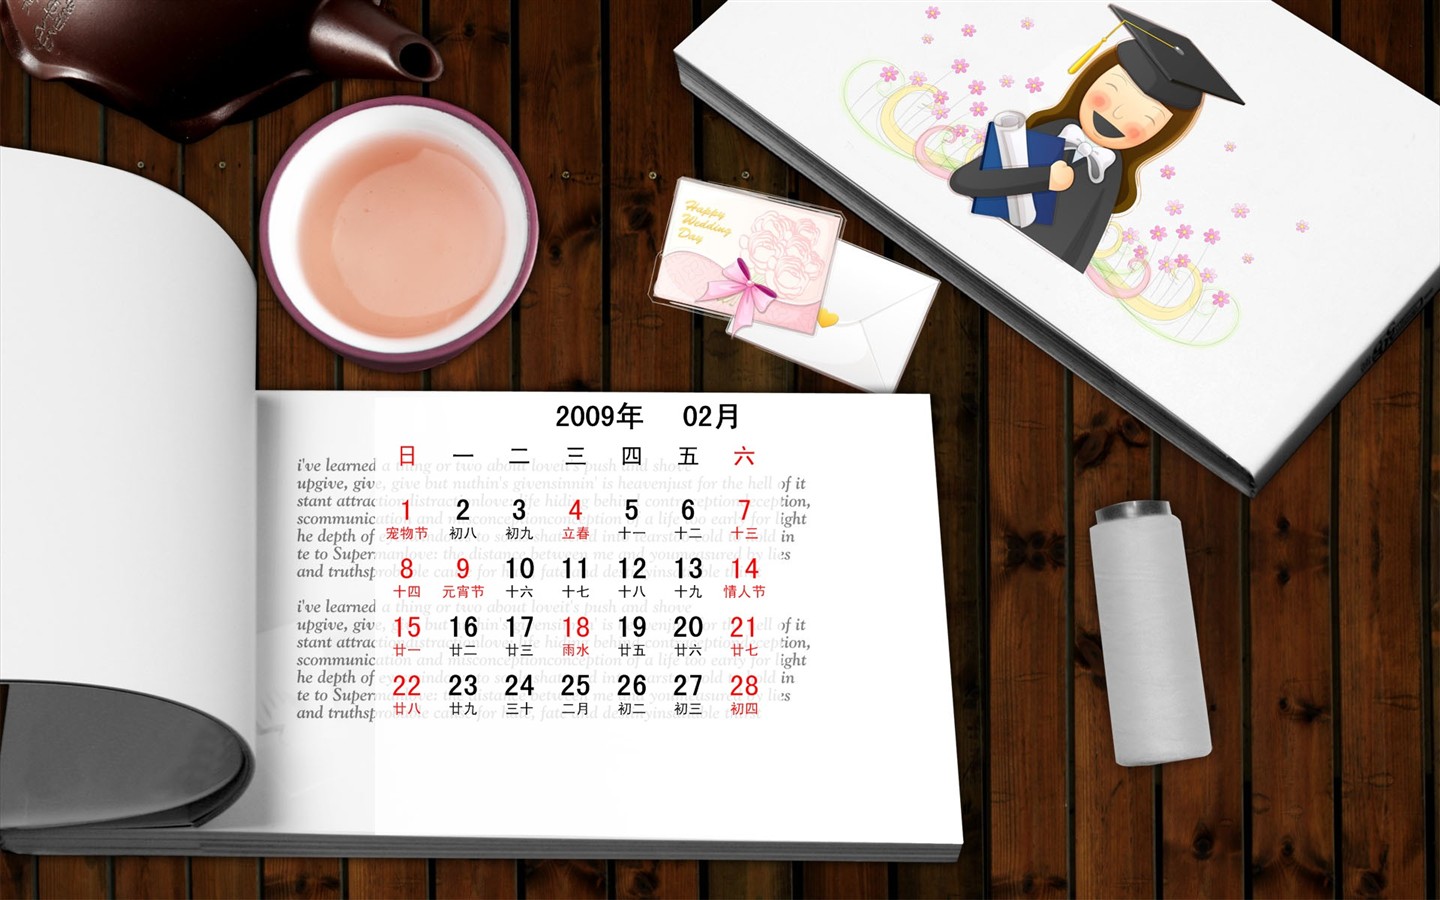 PaperArt 09 années dans le fond d'écran calendrier Février #31 - 1440x900